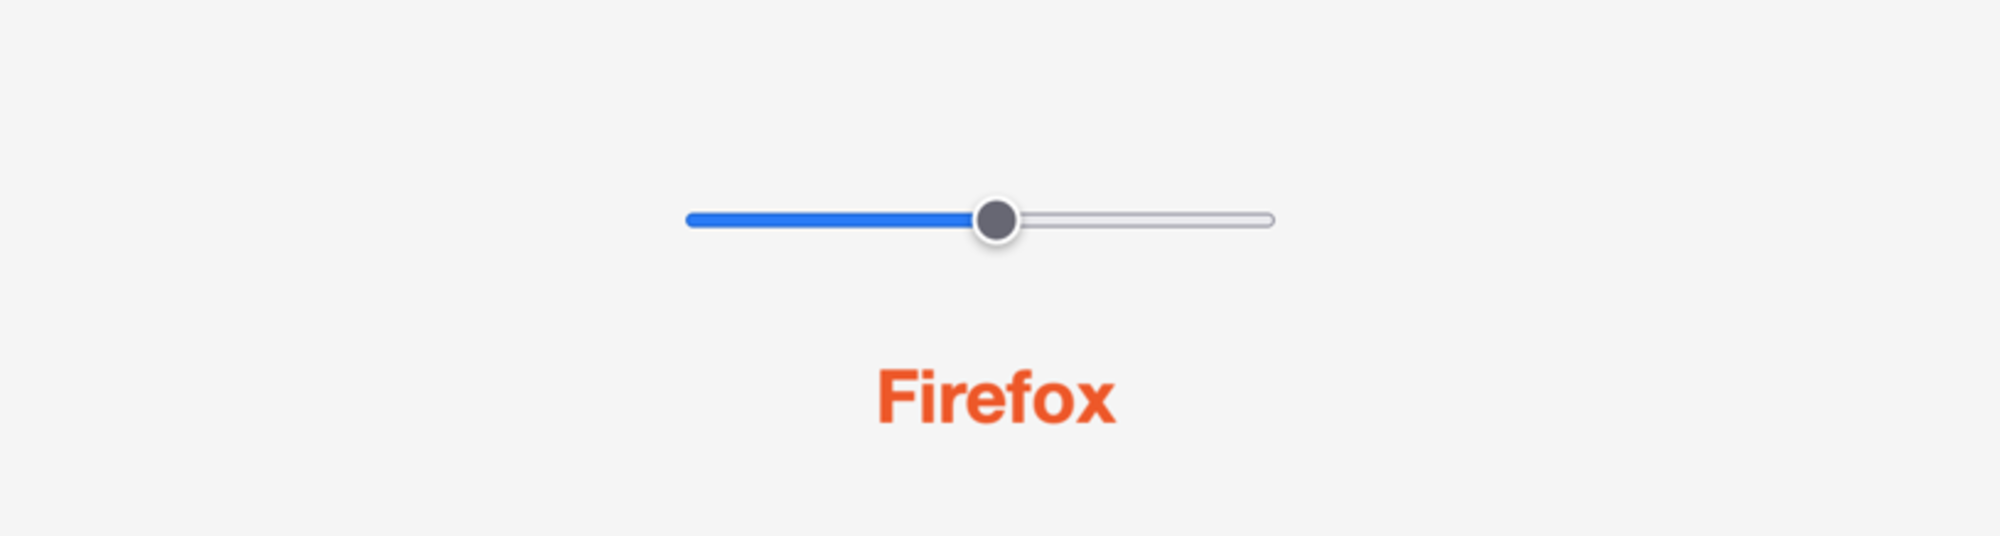 Диапазонный элемент ввода по умолчанию в Firefox